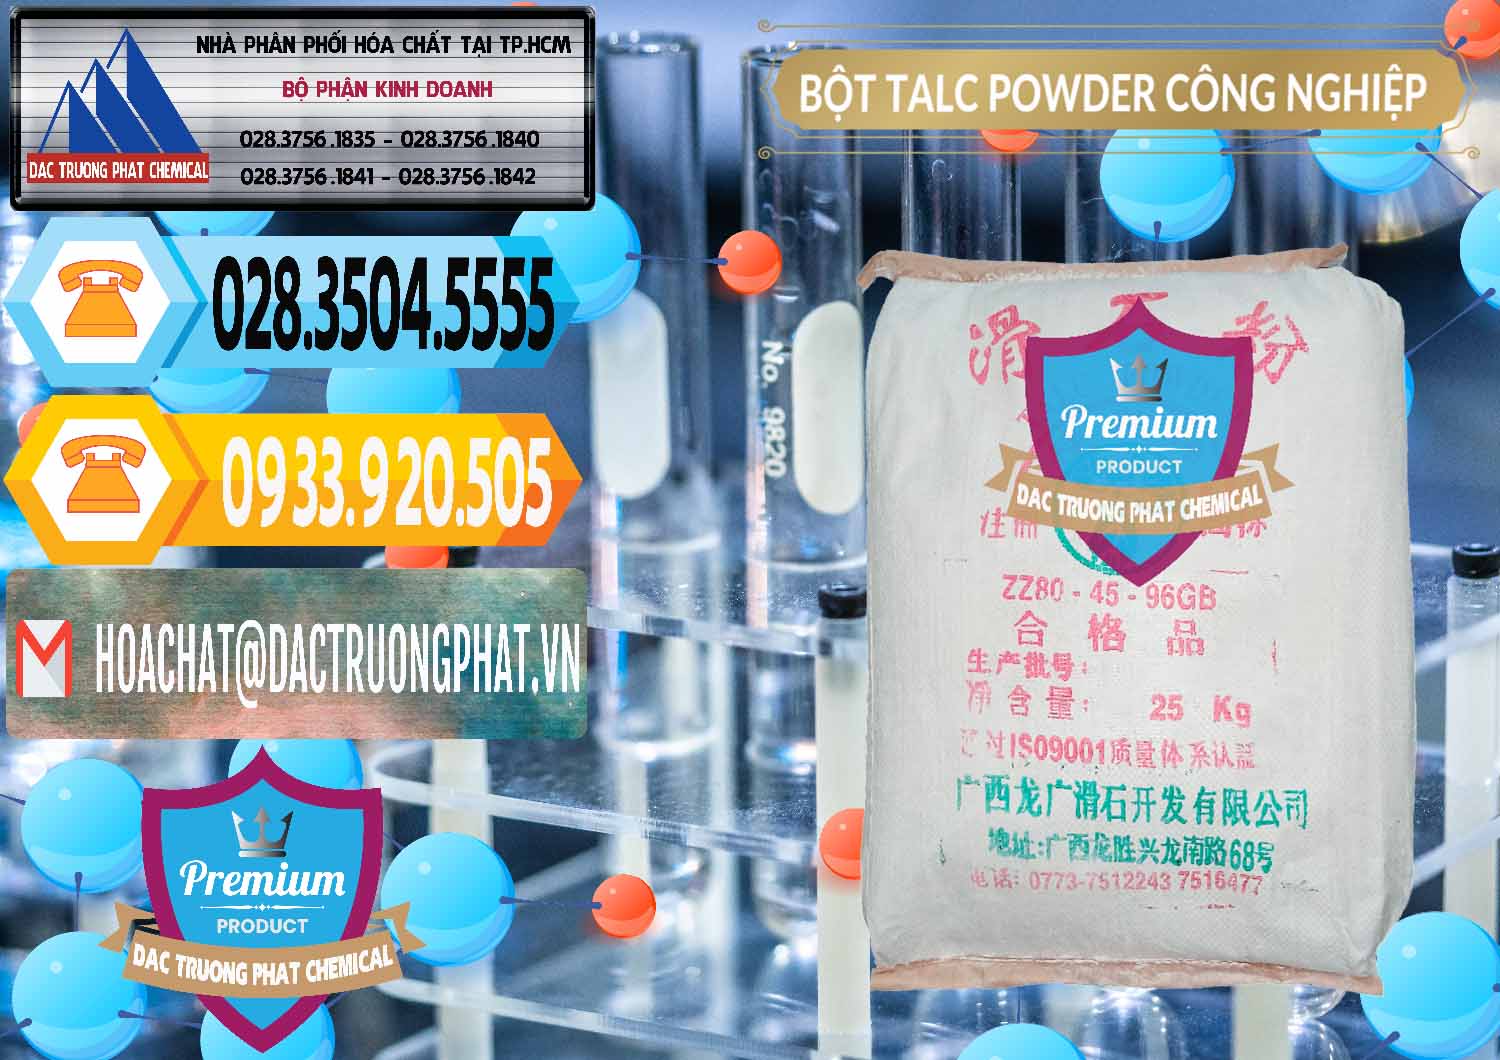 Đơn vị cung ứng & bán Bột Talc Powder Công Nghiệp Trung Quốc China - 0037 - Chuyên cung ứng - phân phối hóa chất tại TP.HCM - hoachattayrua.net